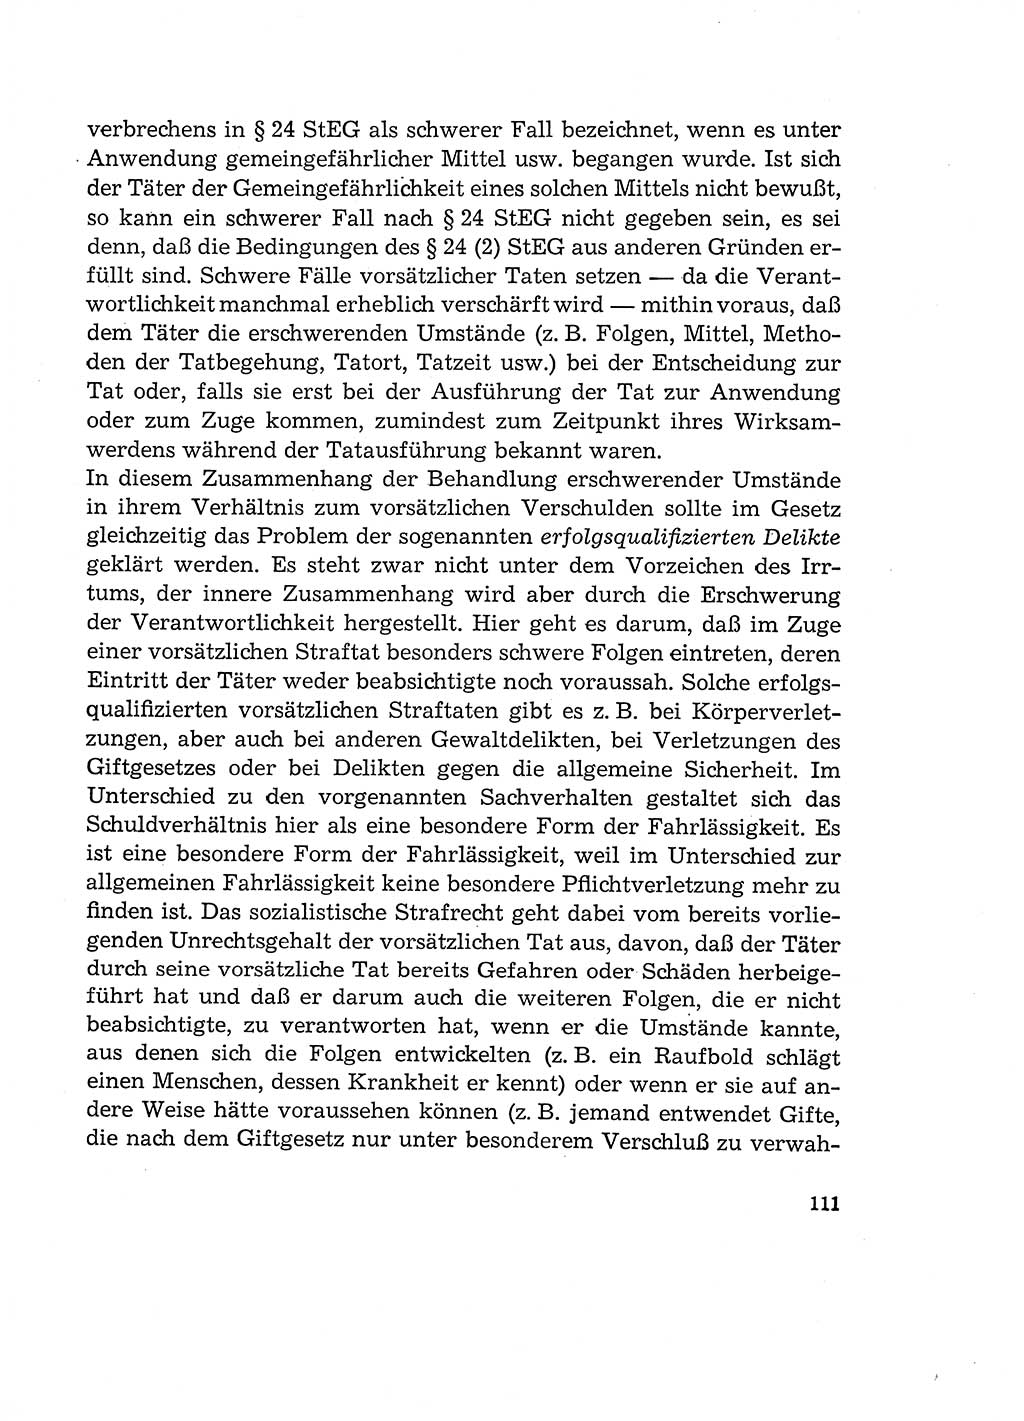 Verantwortung und Schuld im neuen Strafgesetzbuch (StGB) [Deutsche Demokratische Republik (DDR)] 1964, Seite 111 (Verantw. Sch. StGB DDR 1964, S. 111)